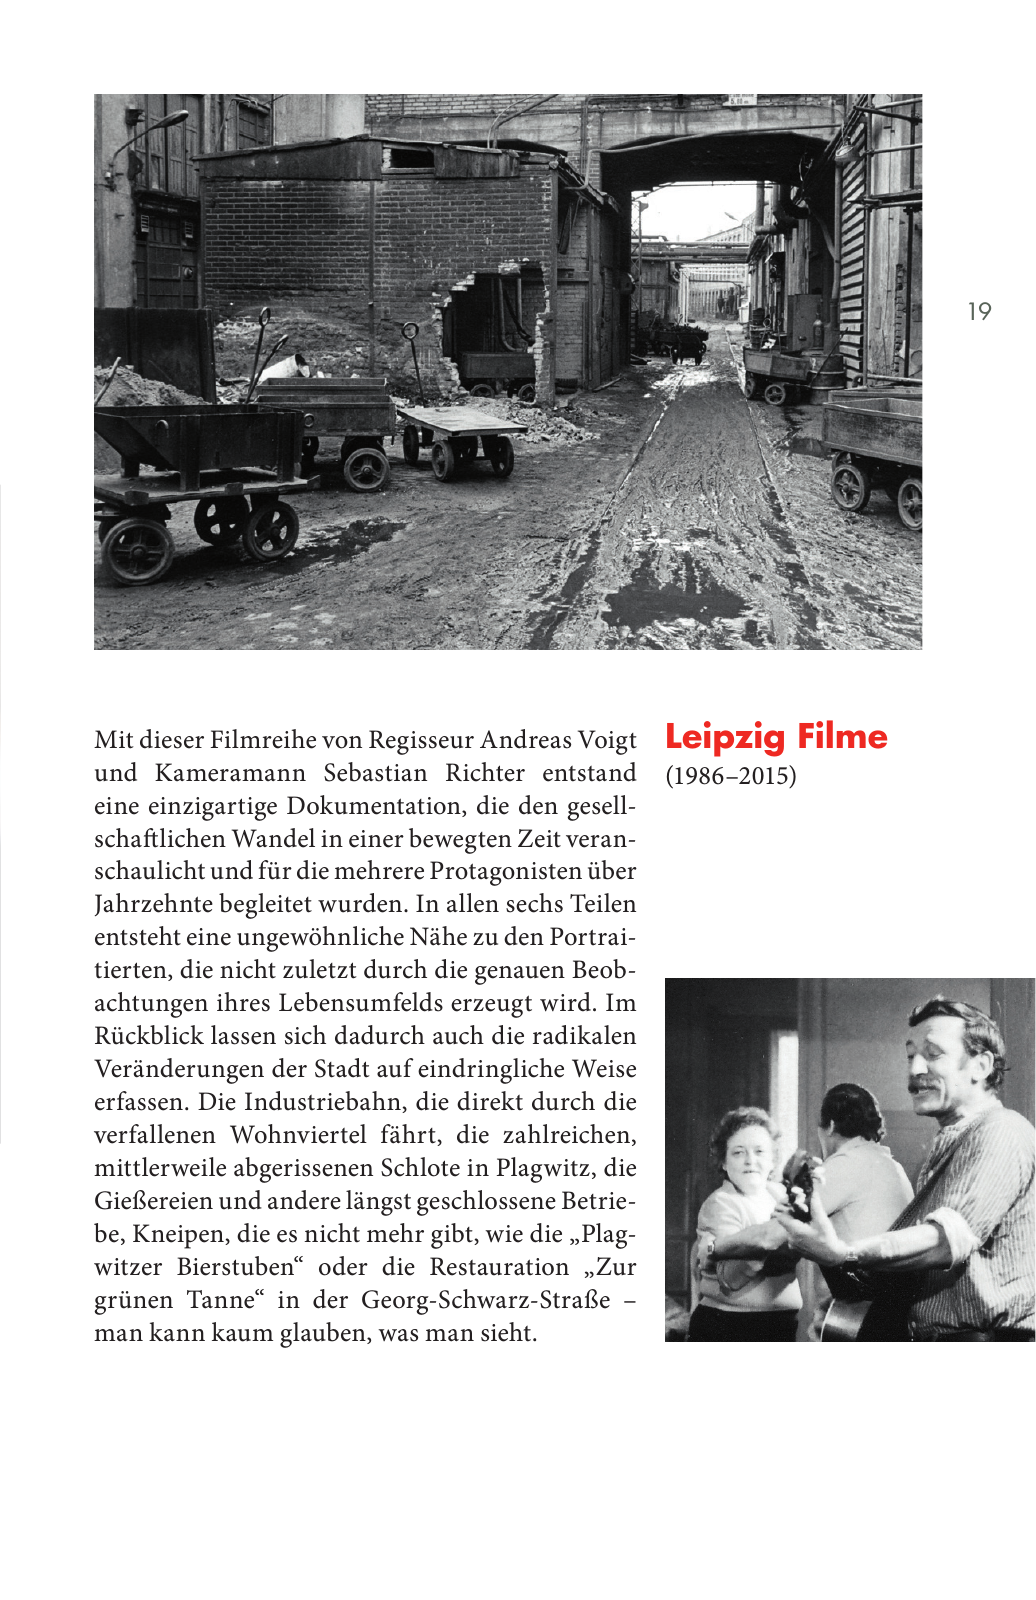 Vorschau Filmland Sachsen Seite 19